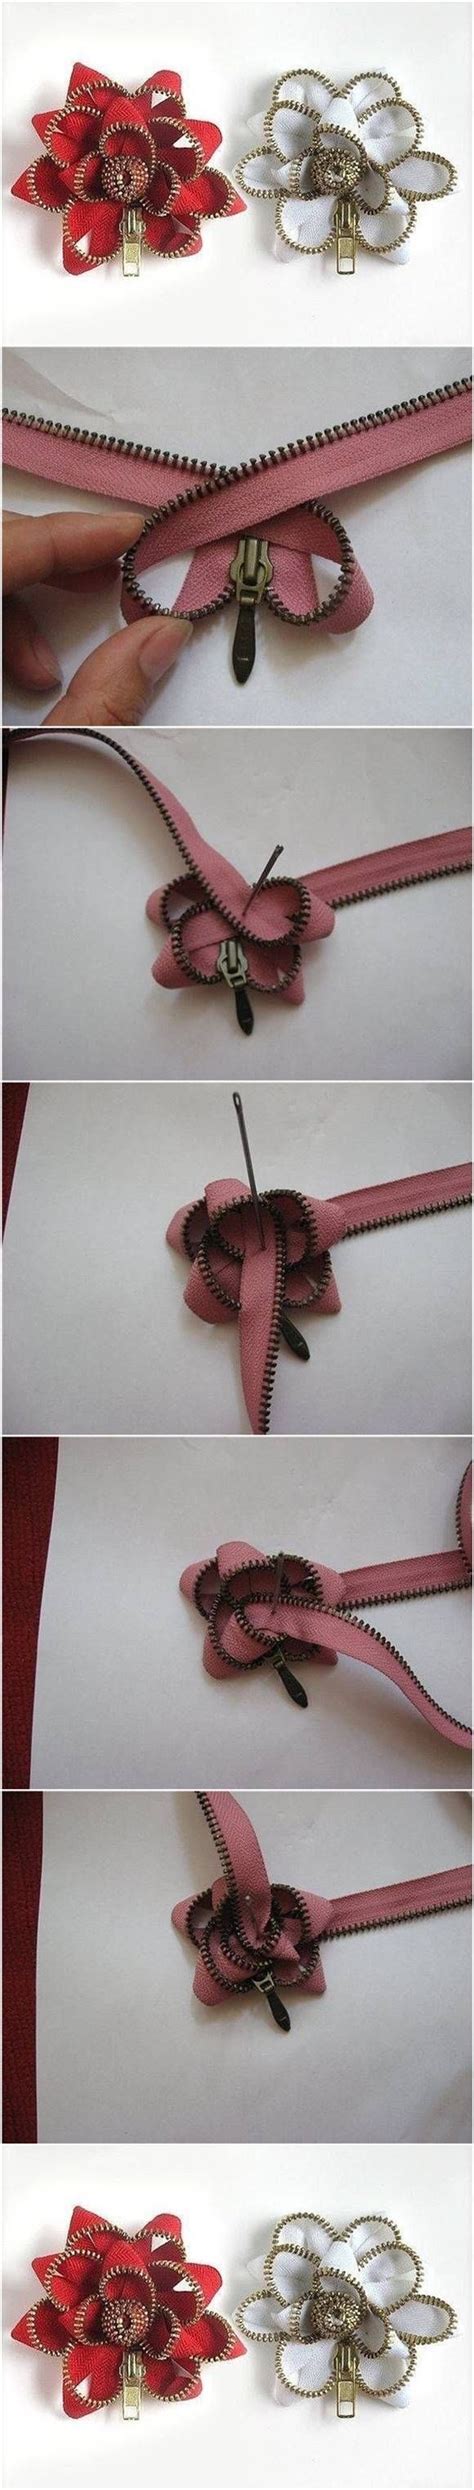 How To Make Easy Zipper Flowers Zipper Flowers Zipper Crafts Flower